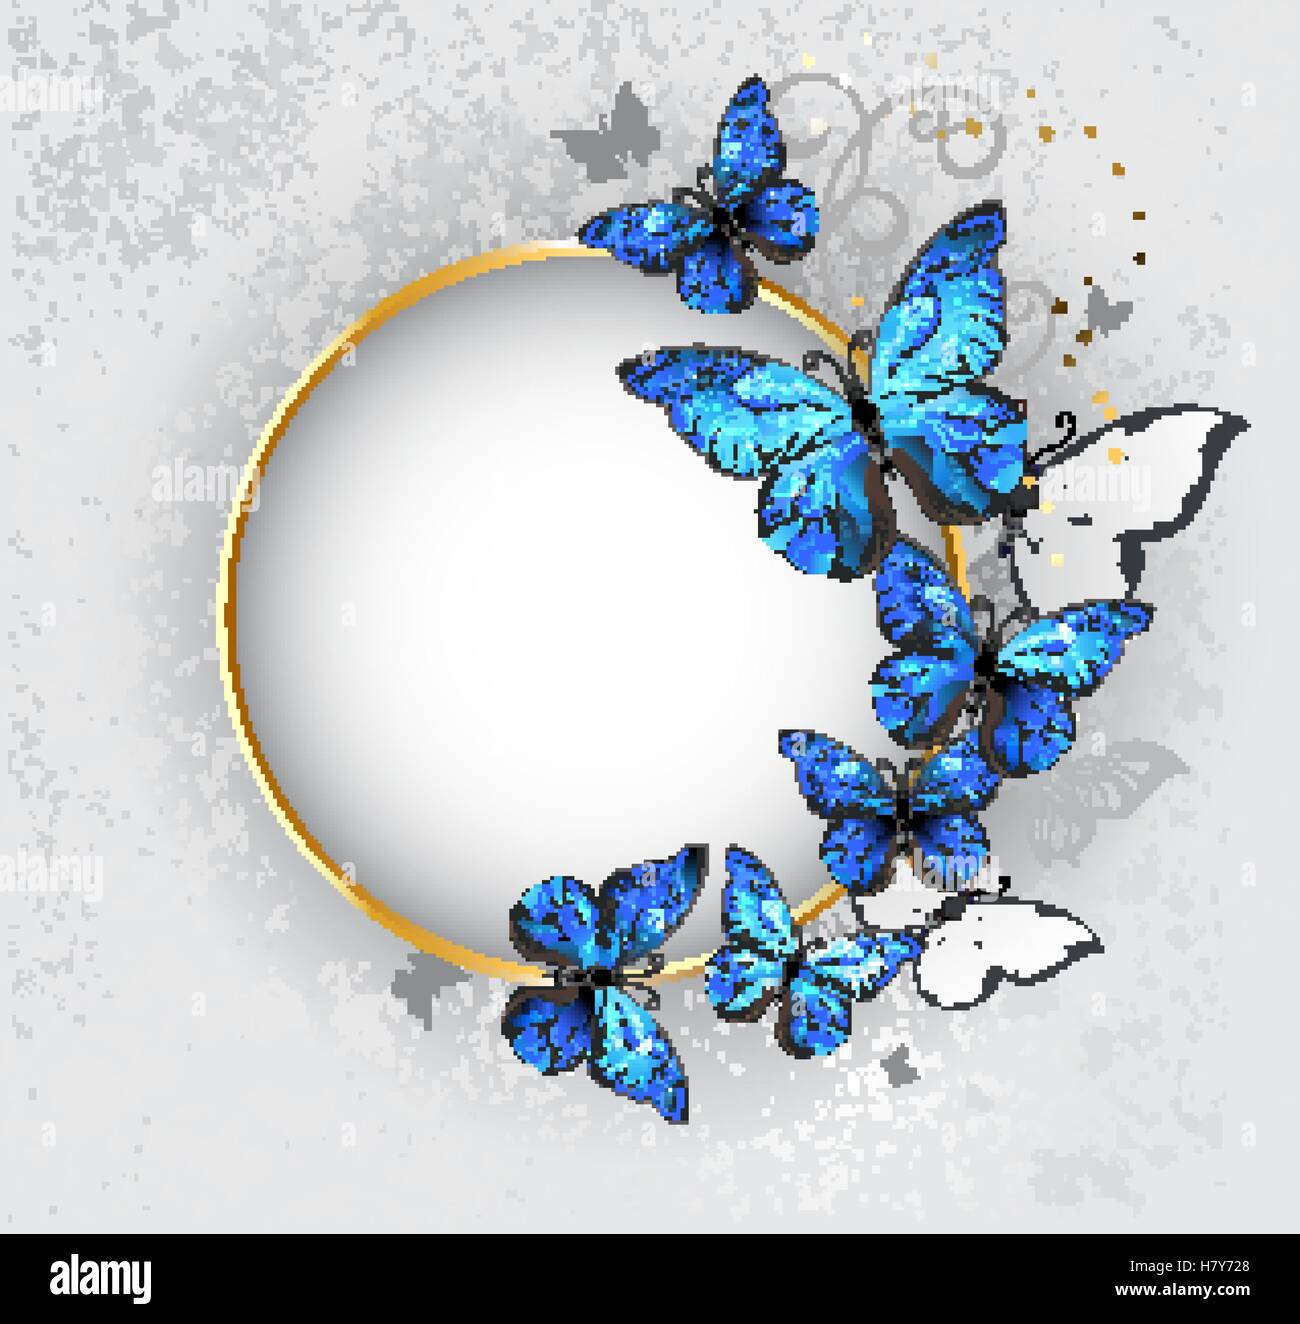 Băng rôn vàng hoàn thiện với con bướm morpho màu xanh trên nền xám tạo nên một sự kết hợp tuyệt đẹp giữa màu sắc và phong cách. Hãy cùng tìm hiểu về con bướm và sự kết hợp đầy tinh tế của hình nền băng rôn và bướm màu xanh này.